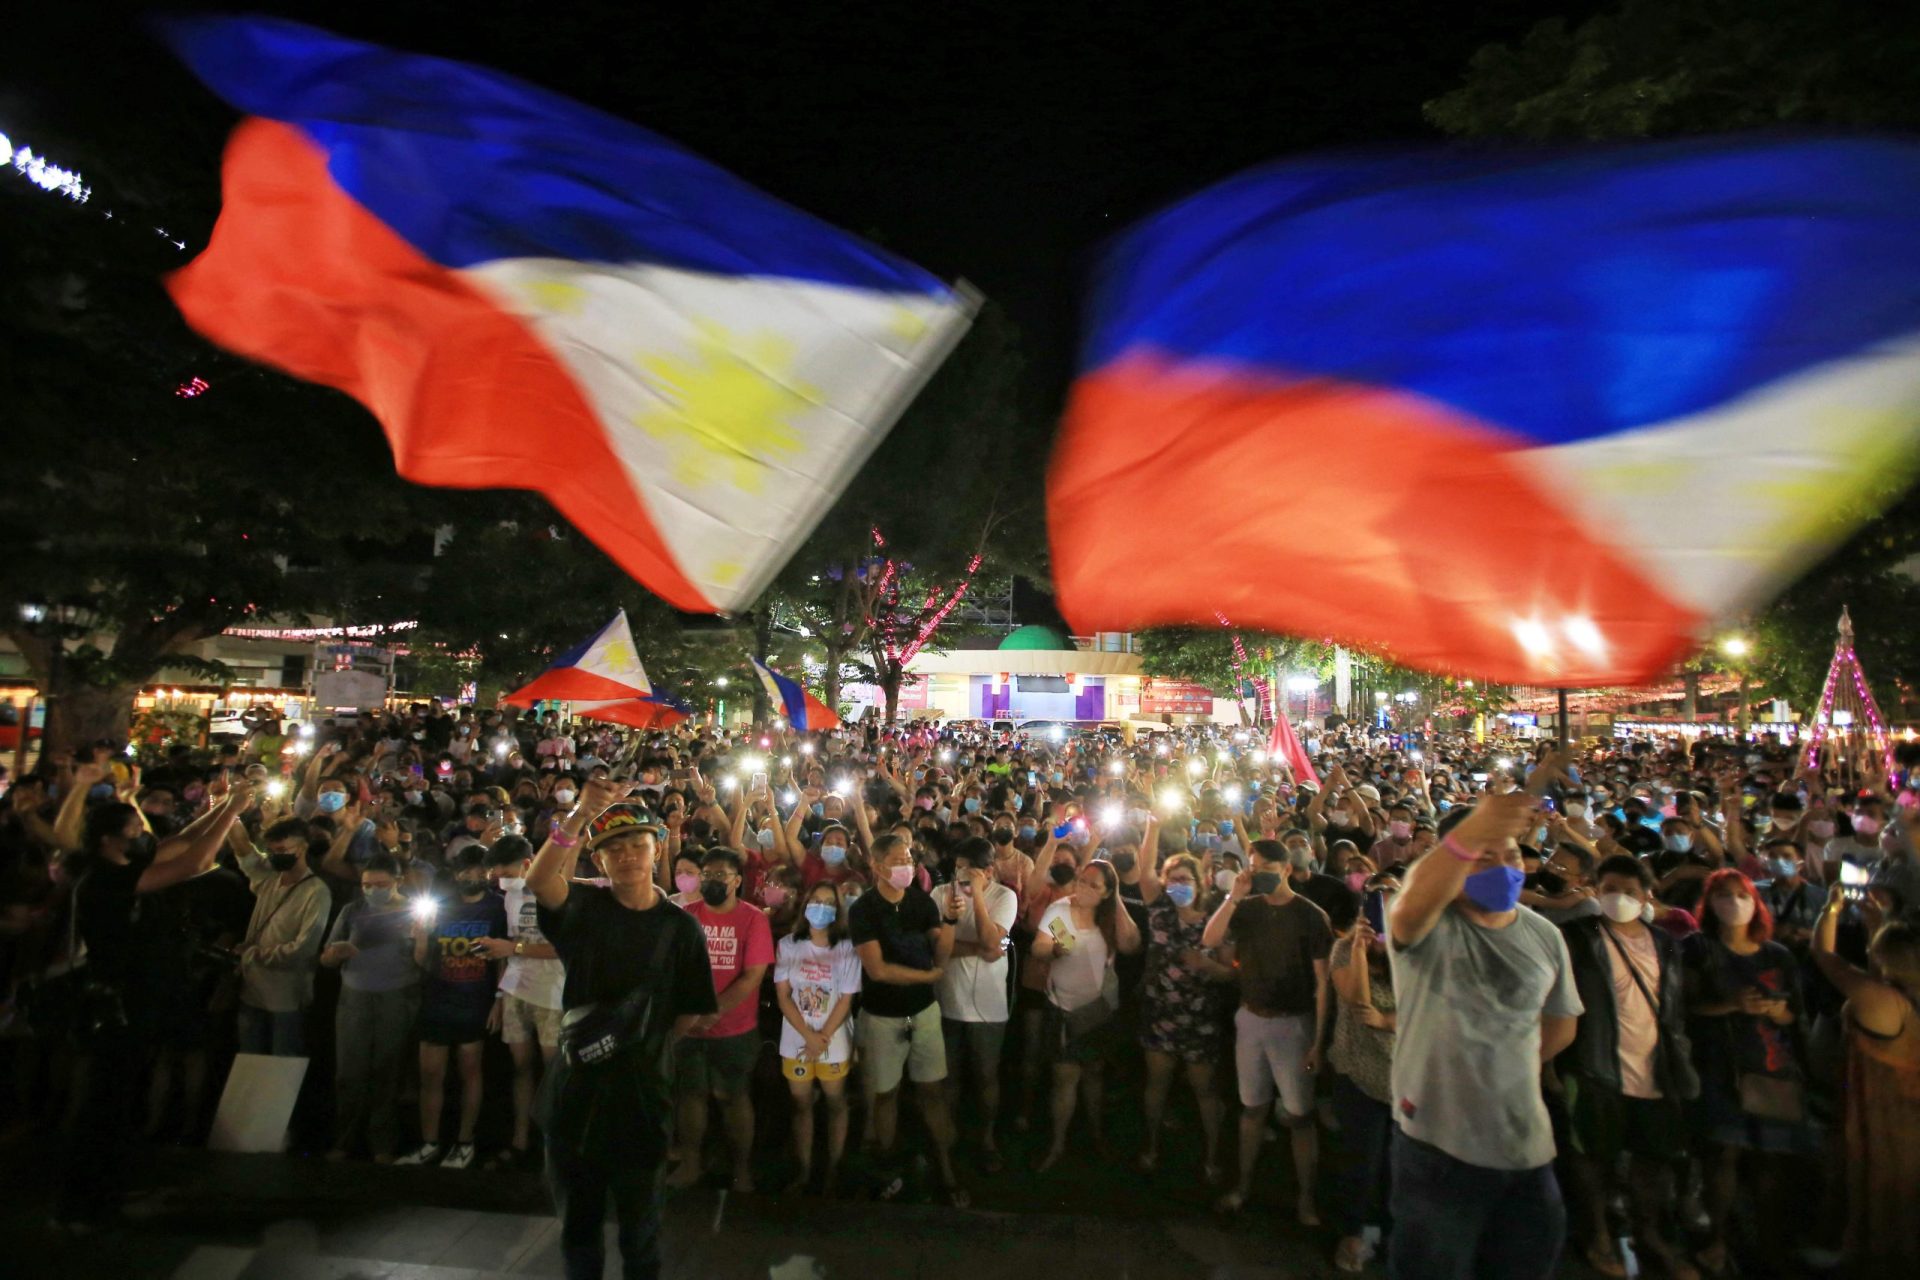 Filipinas. As eleições do &#8220;bem contra o mal&#8221; favorecem o &#8220;mal&#8221;